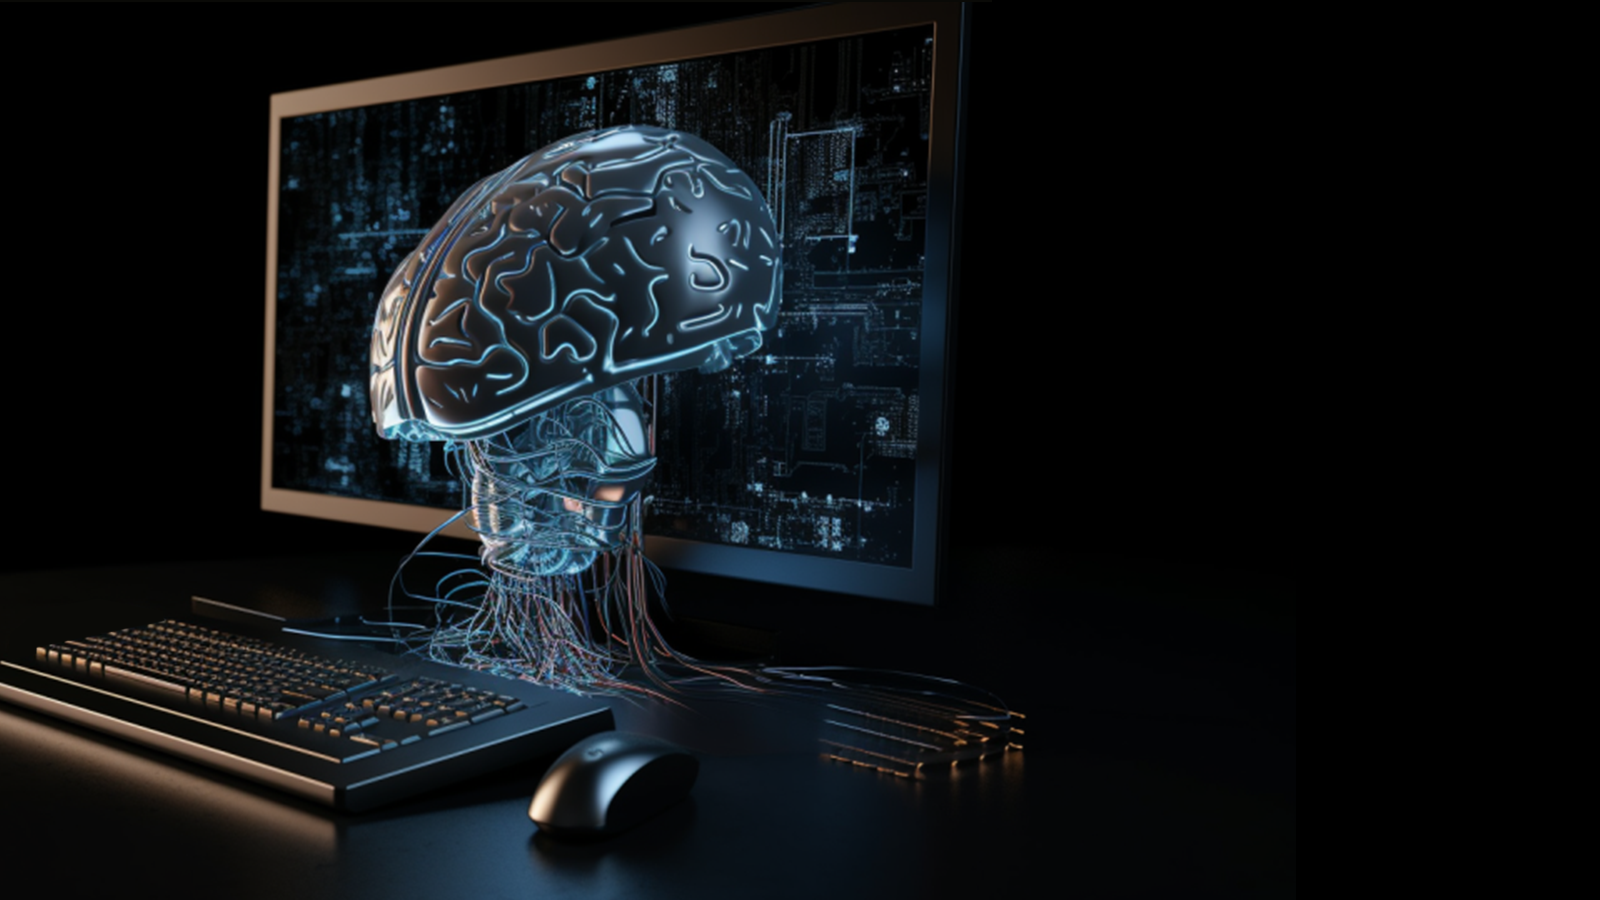 Sur fond noir, on voit un clavier, et un écran d'ordinateur devant lequel un cerveau est connecté à une multitude de fils pour représenter l'intelligence artificielle